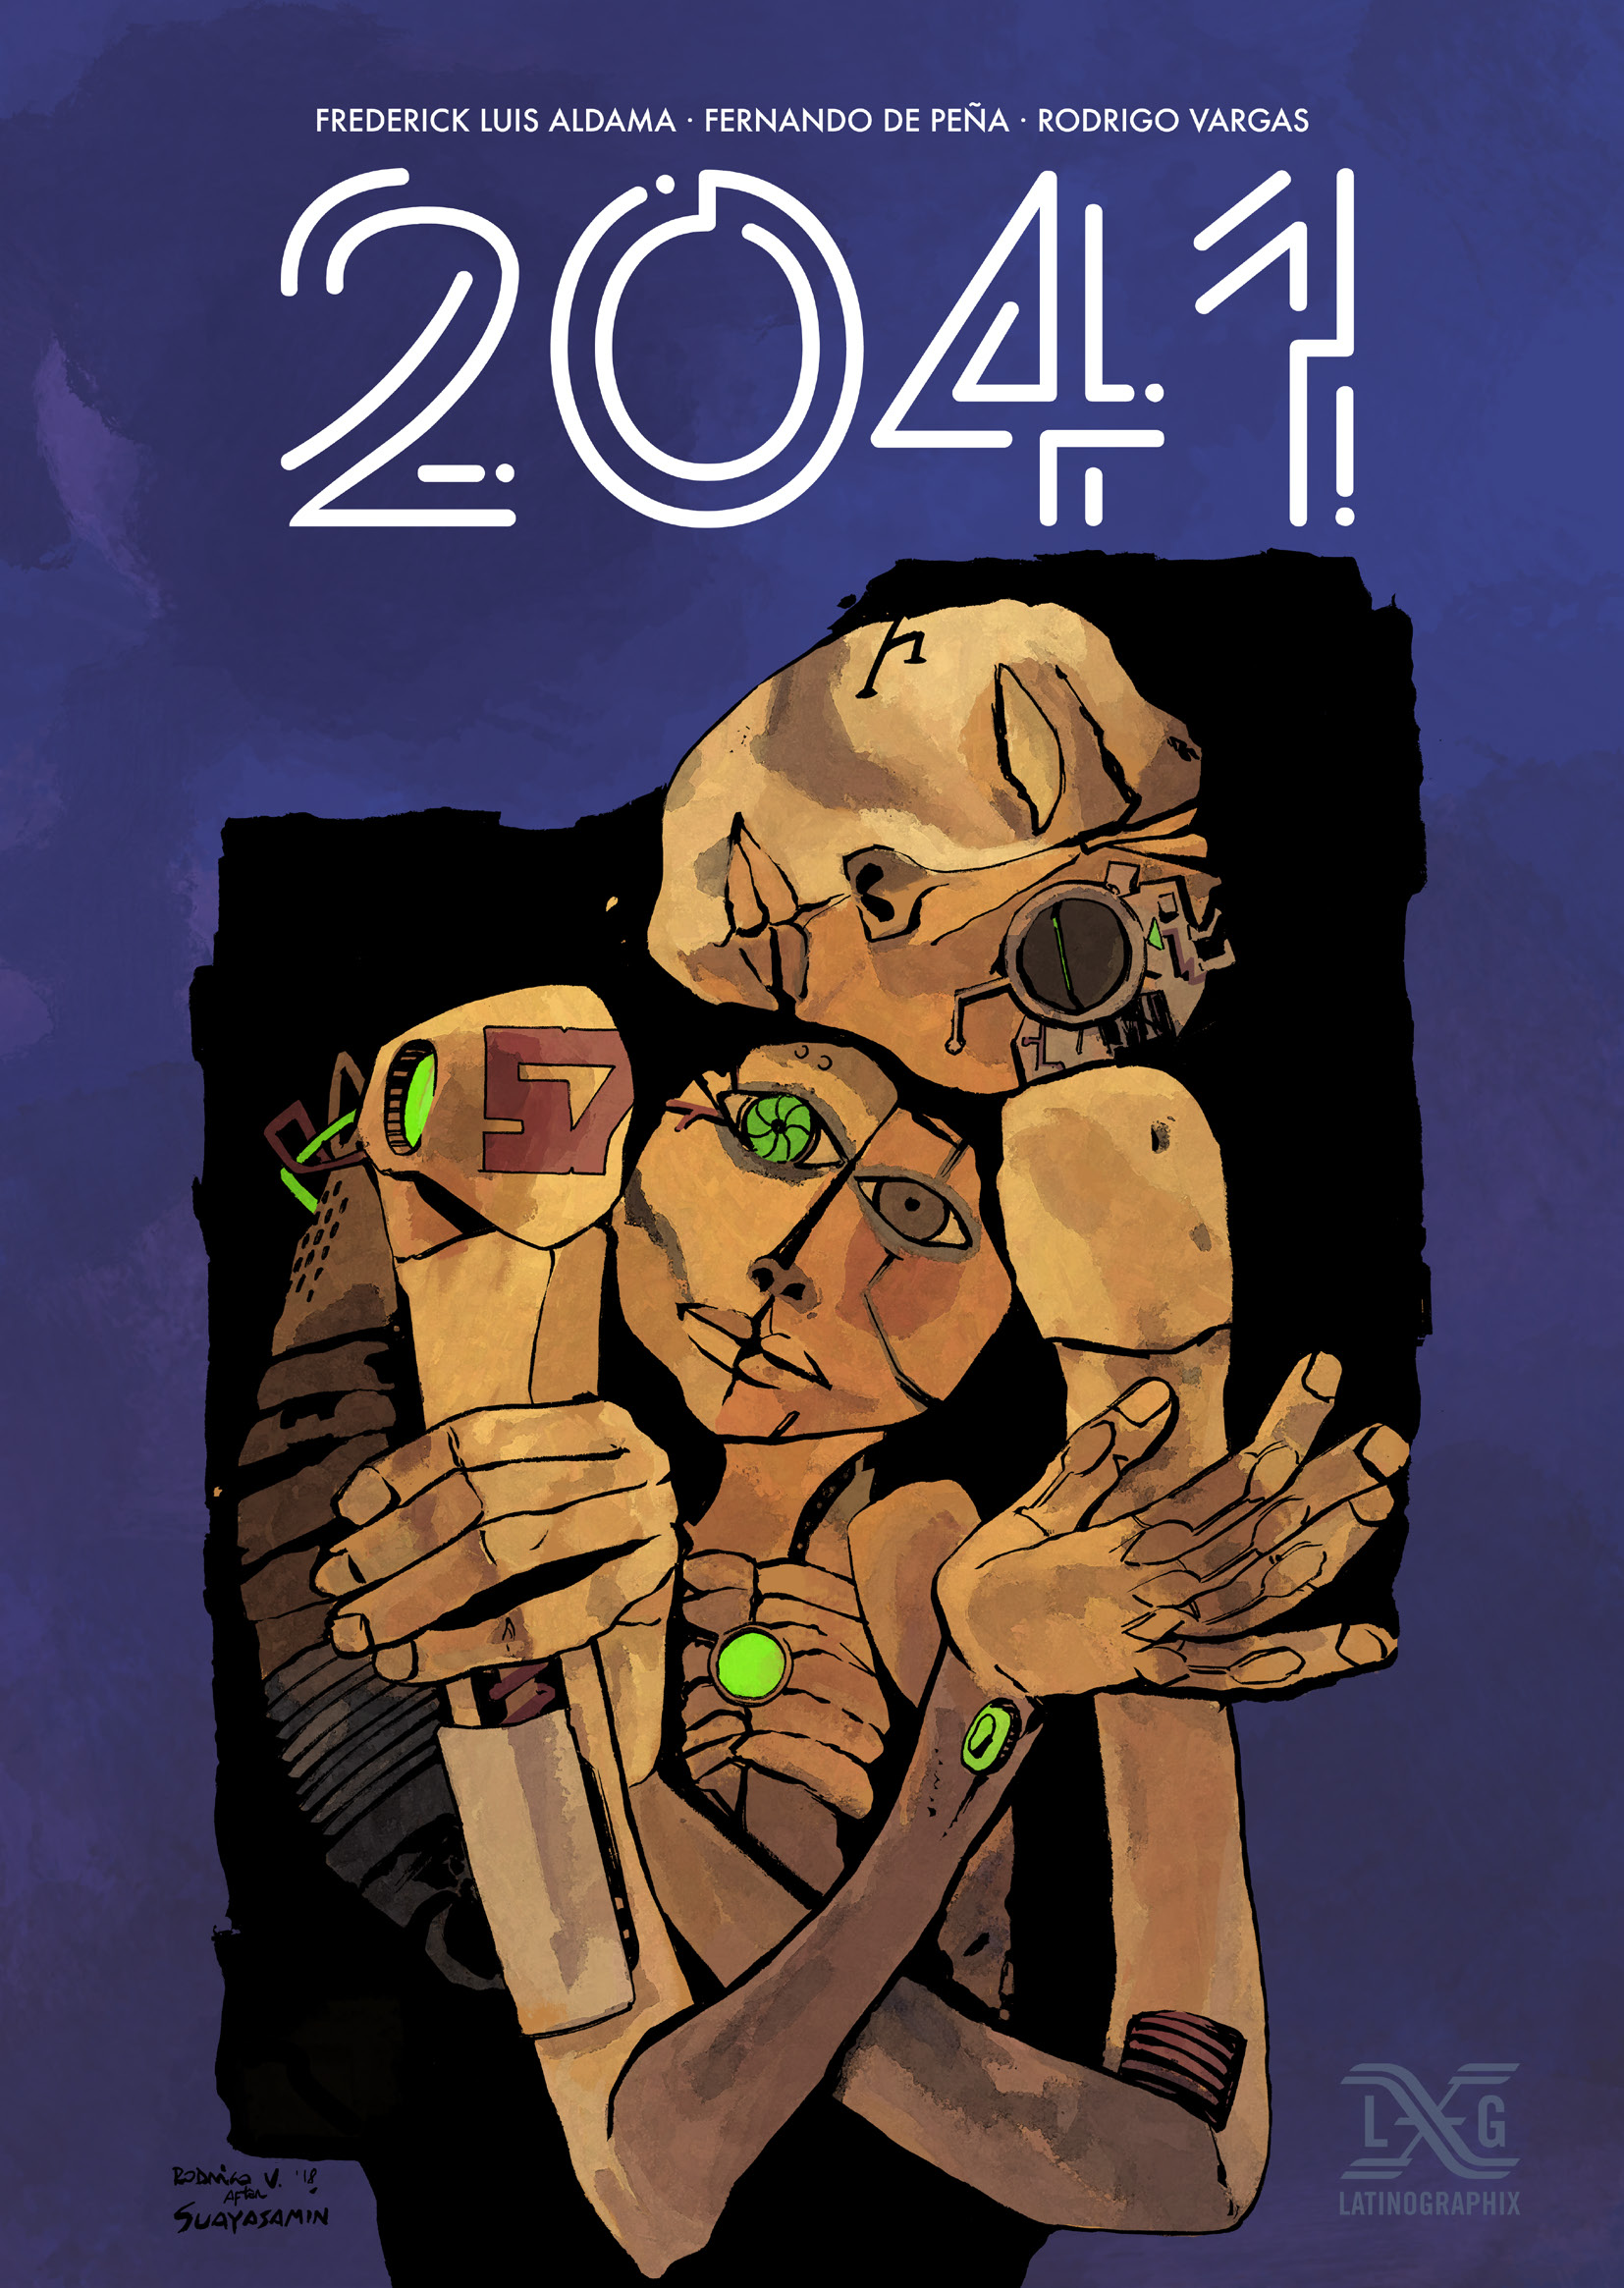 Preview of "2041"—by Aldama, Peña, & Vargas (Latinographix, OSU Press)